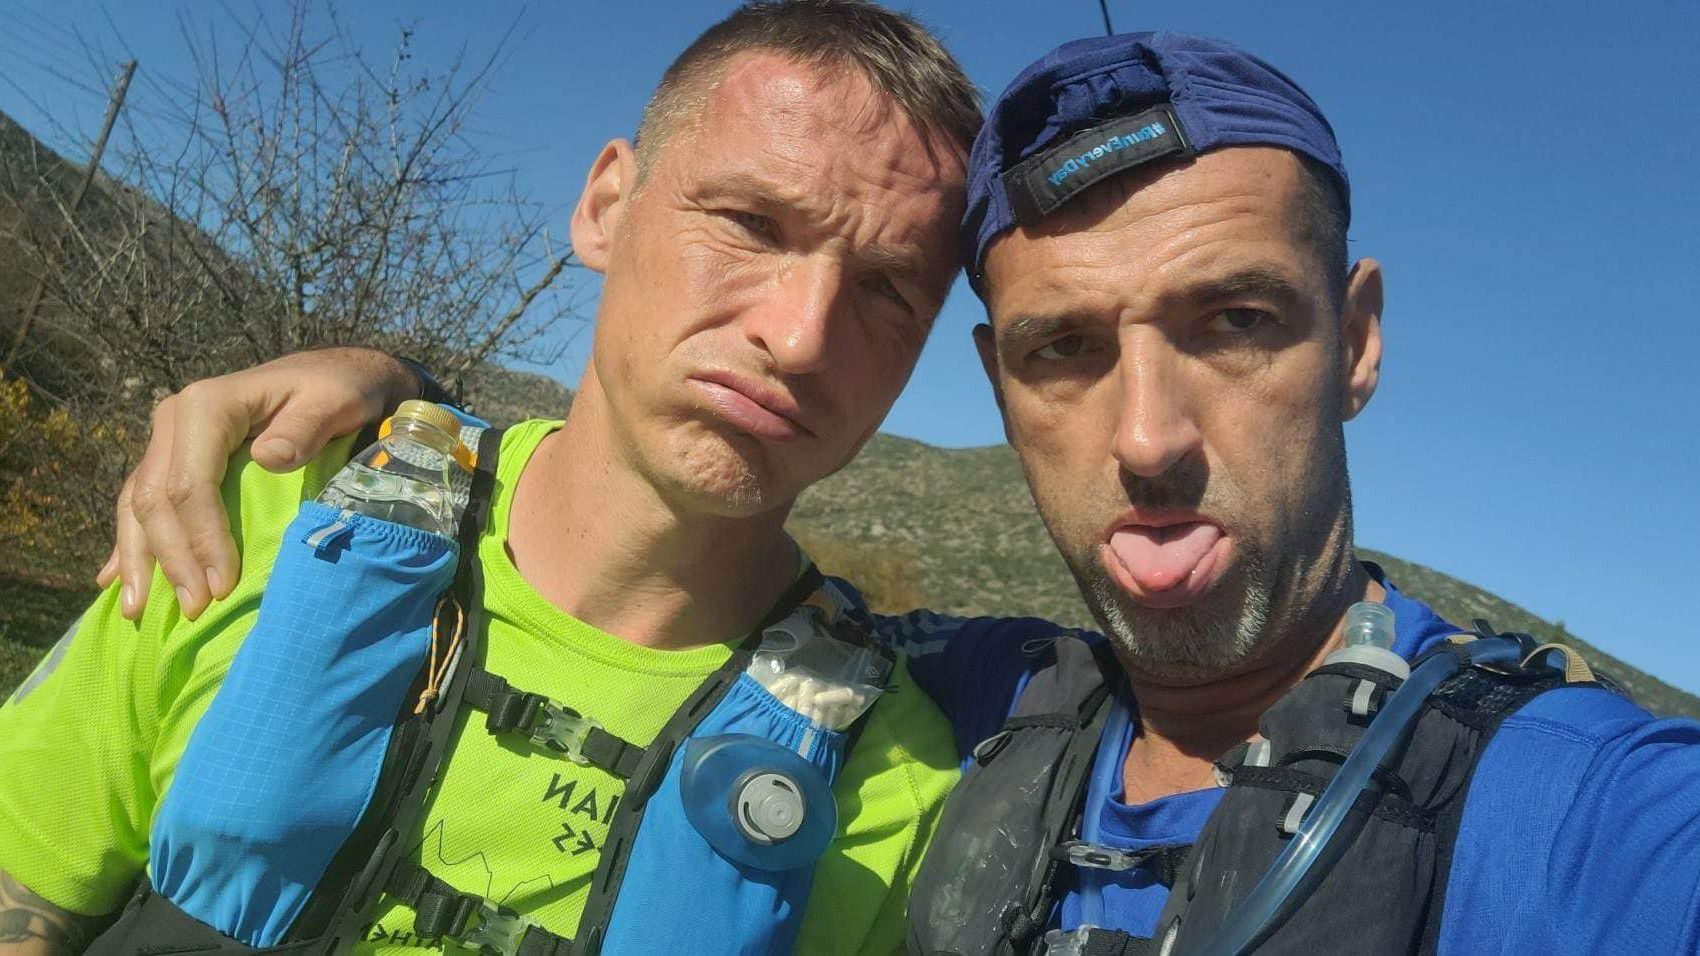 A Ferenczi, Blaskó párosnak az idén nem sikerült végigfutnia a dupla Spartathlont, de így is 245 kilométert (!) teljesített. (Fotó: Facebook/Authentic Phidippides Run Hungarian Team)